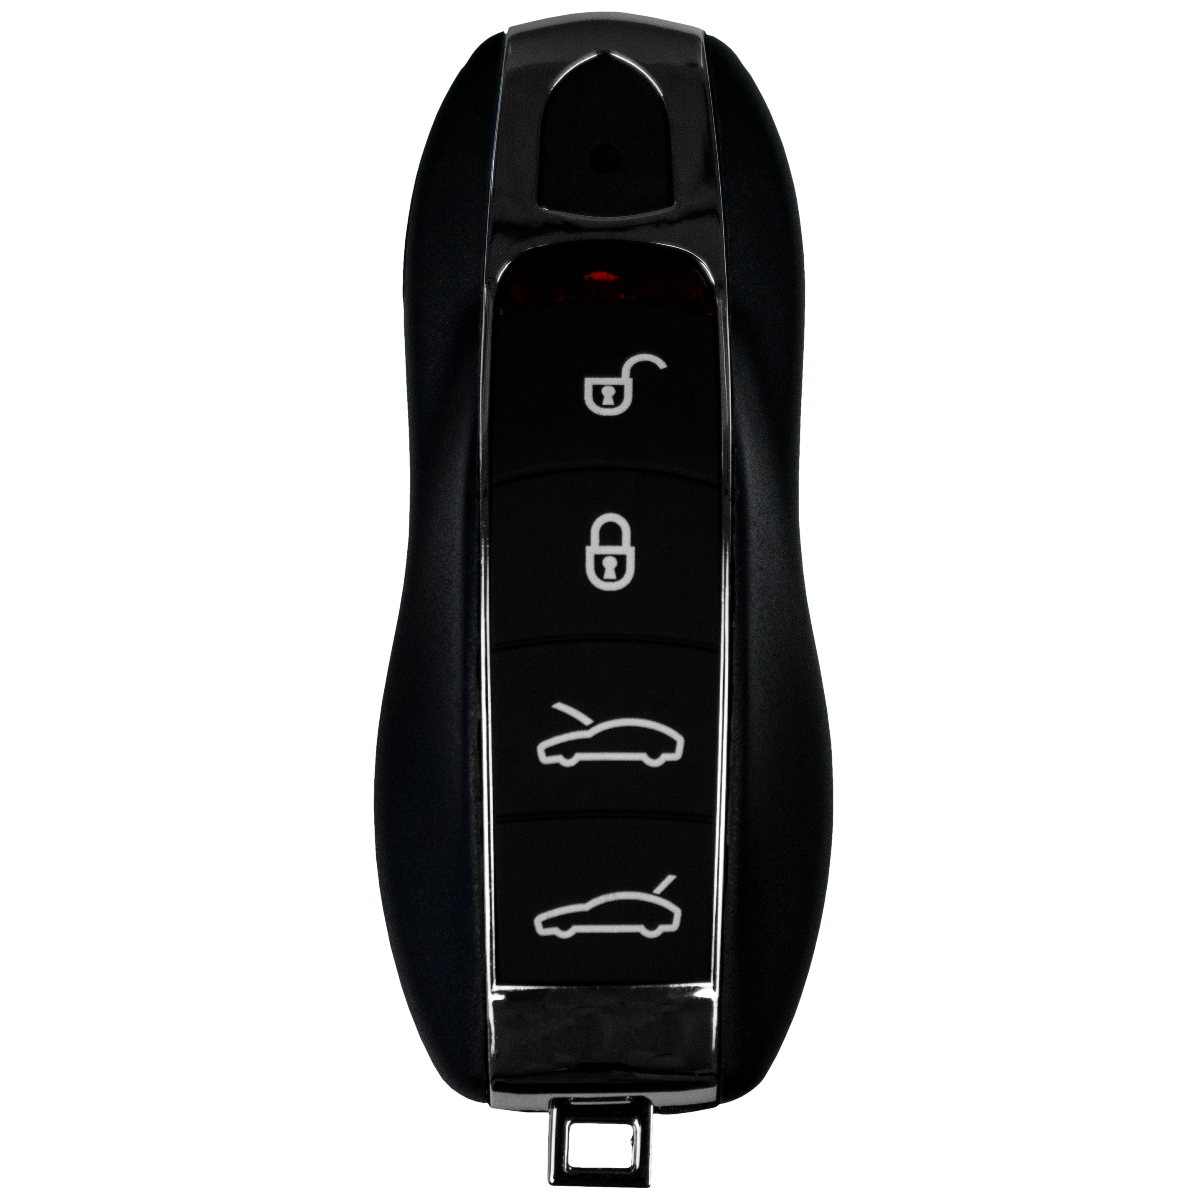 Smartkey Schlüsselgehäuse für Mercedes Benz - 2 Tasten - After